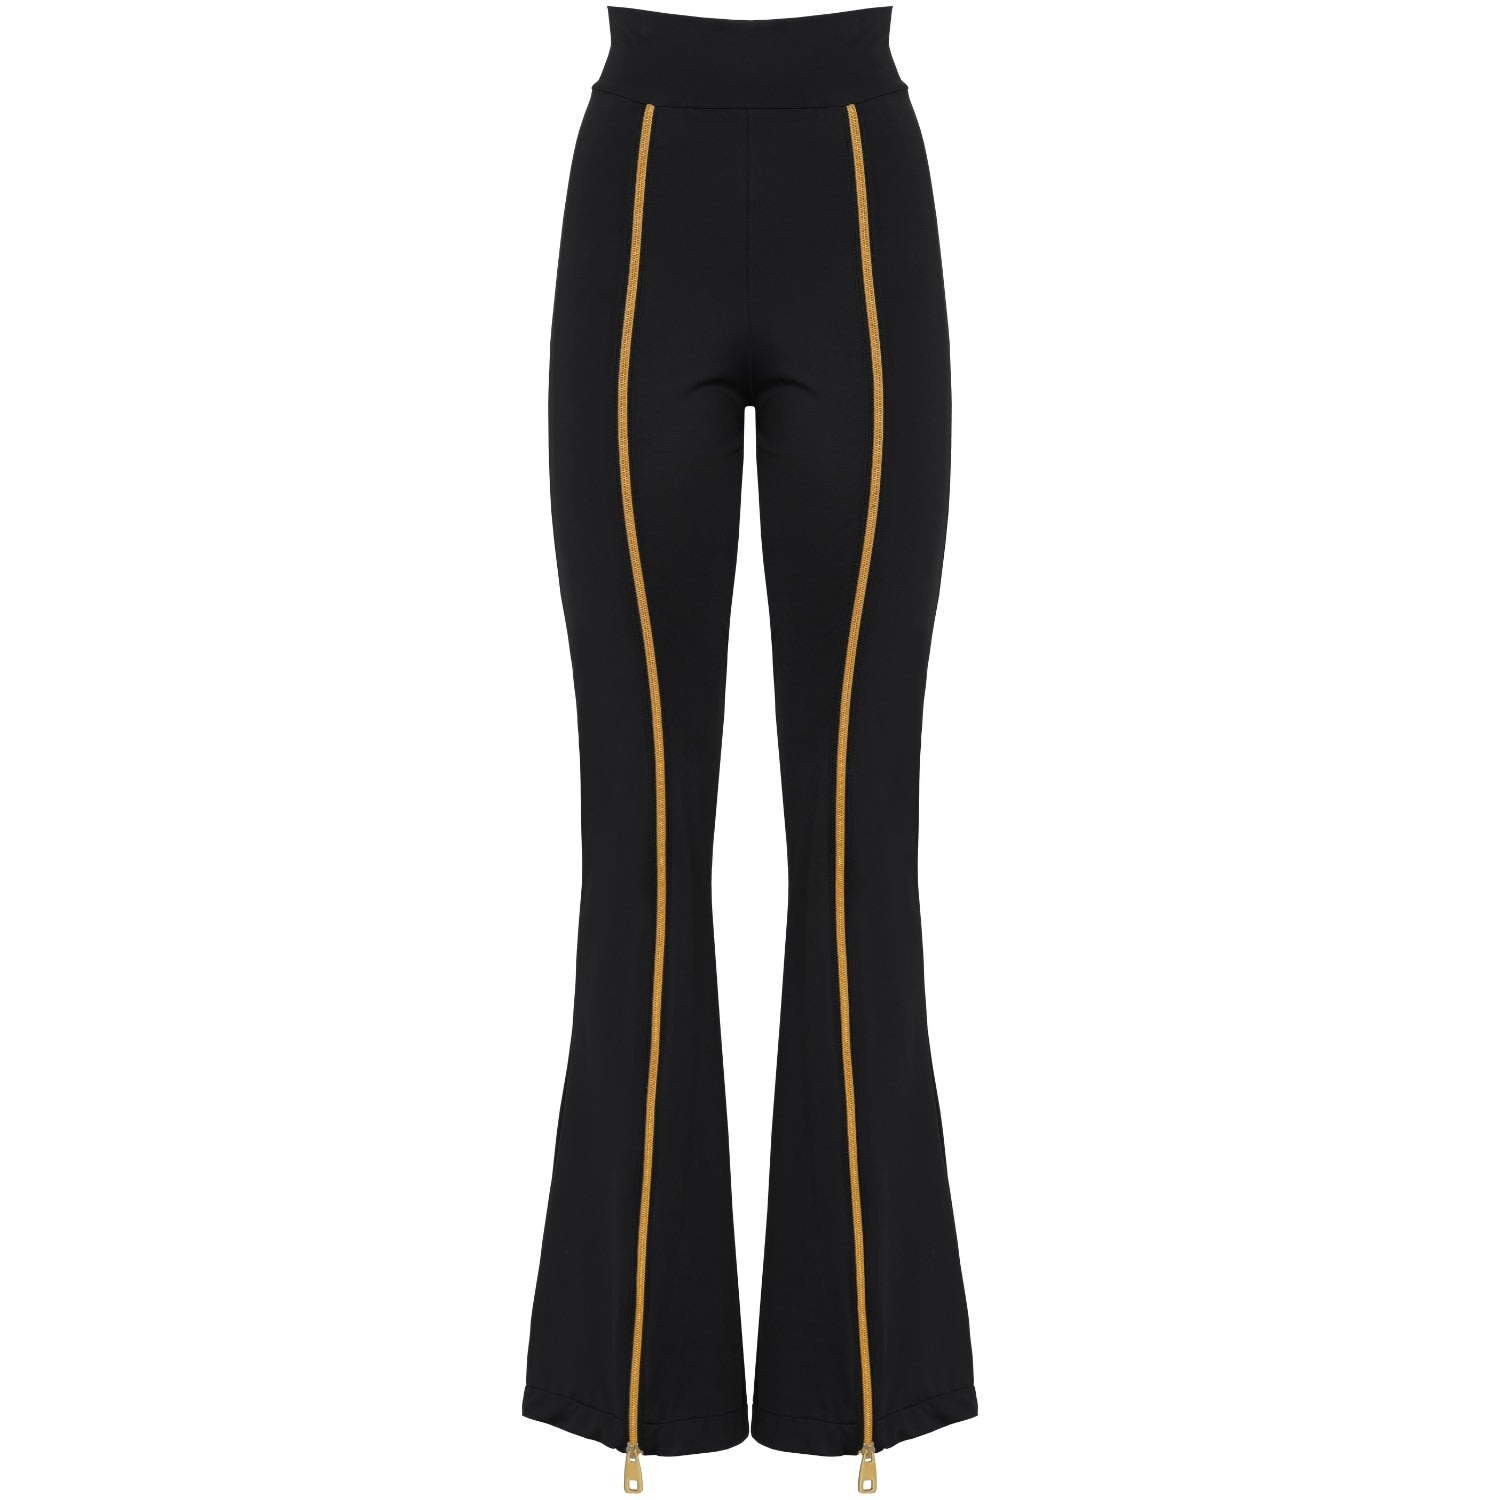 Antoninias Women's Zipnisa Elegant High Waisted Pants With Golden Zip In Black